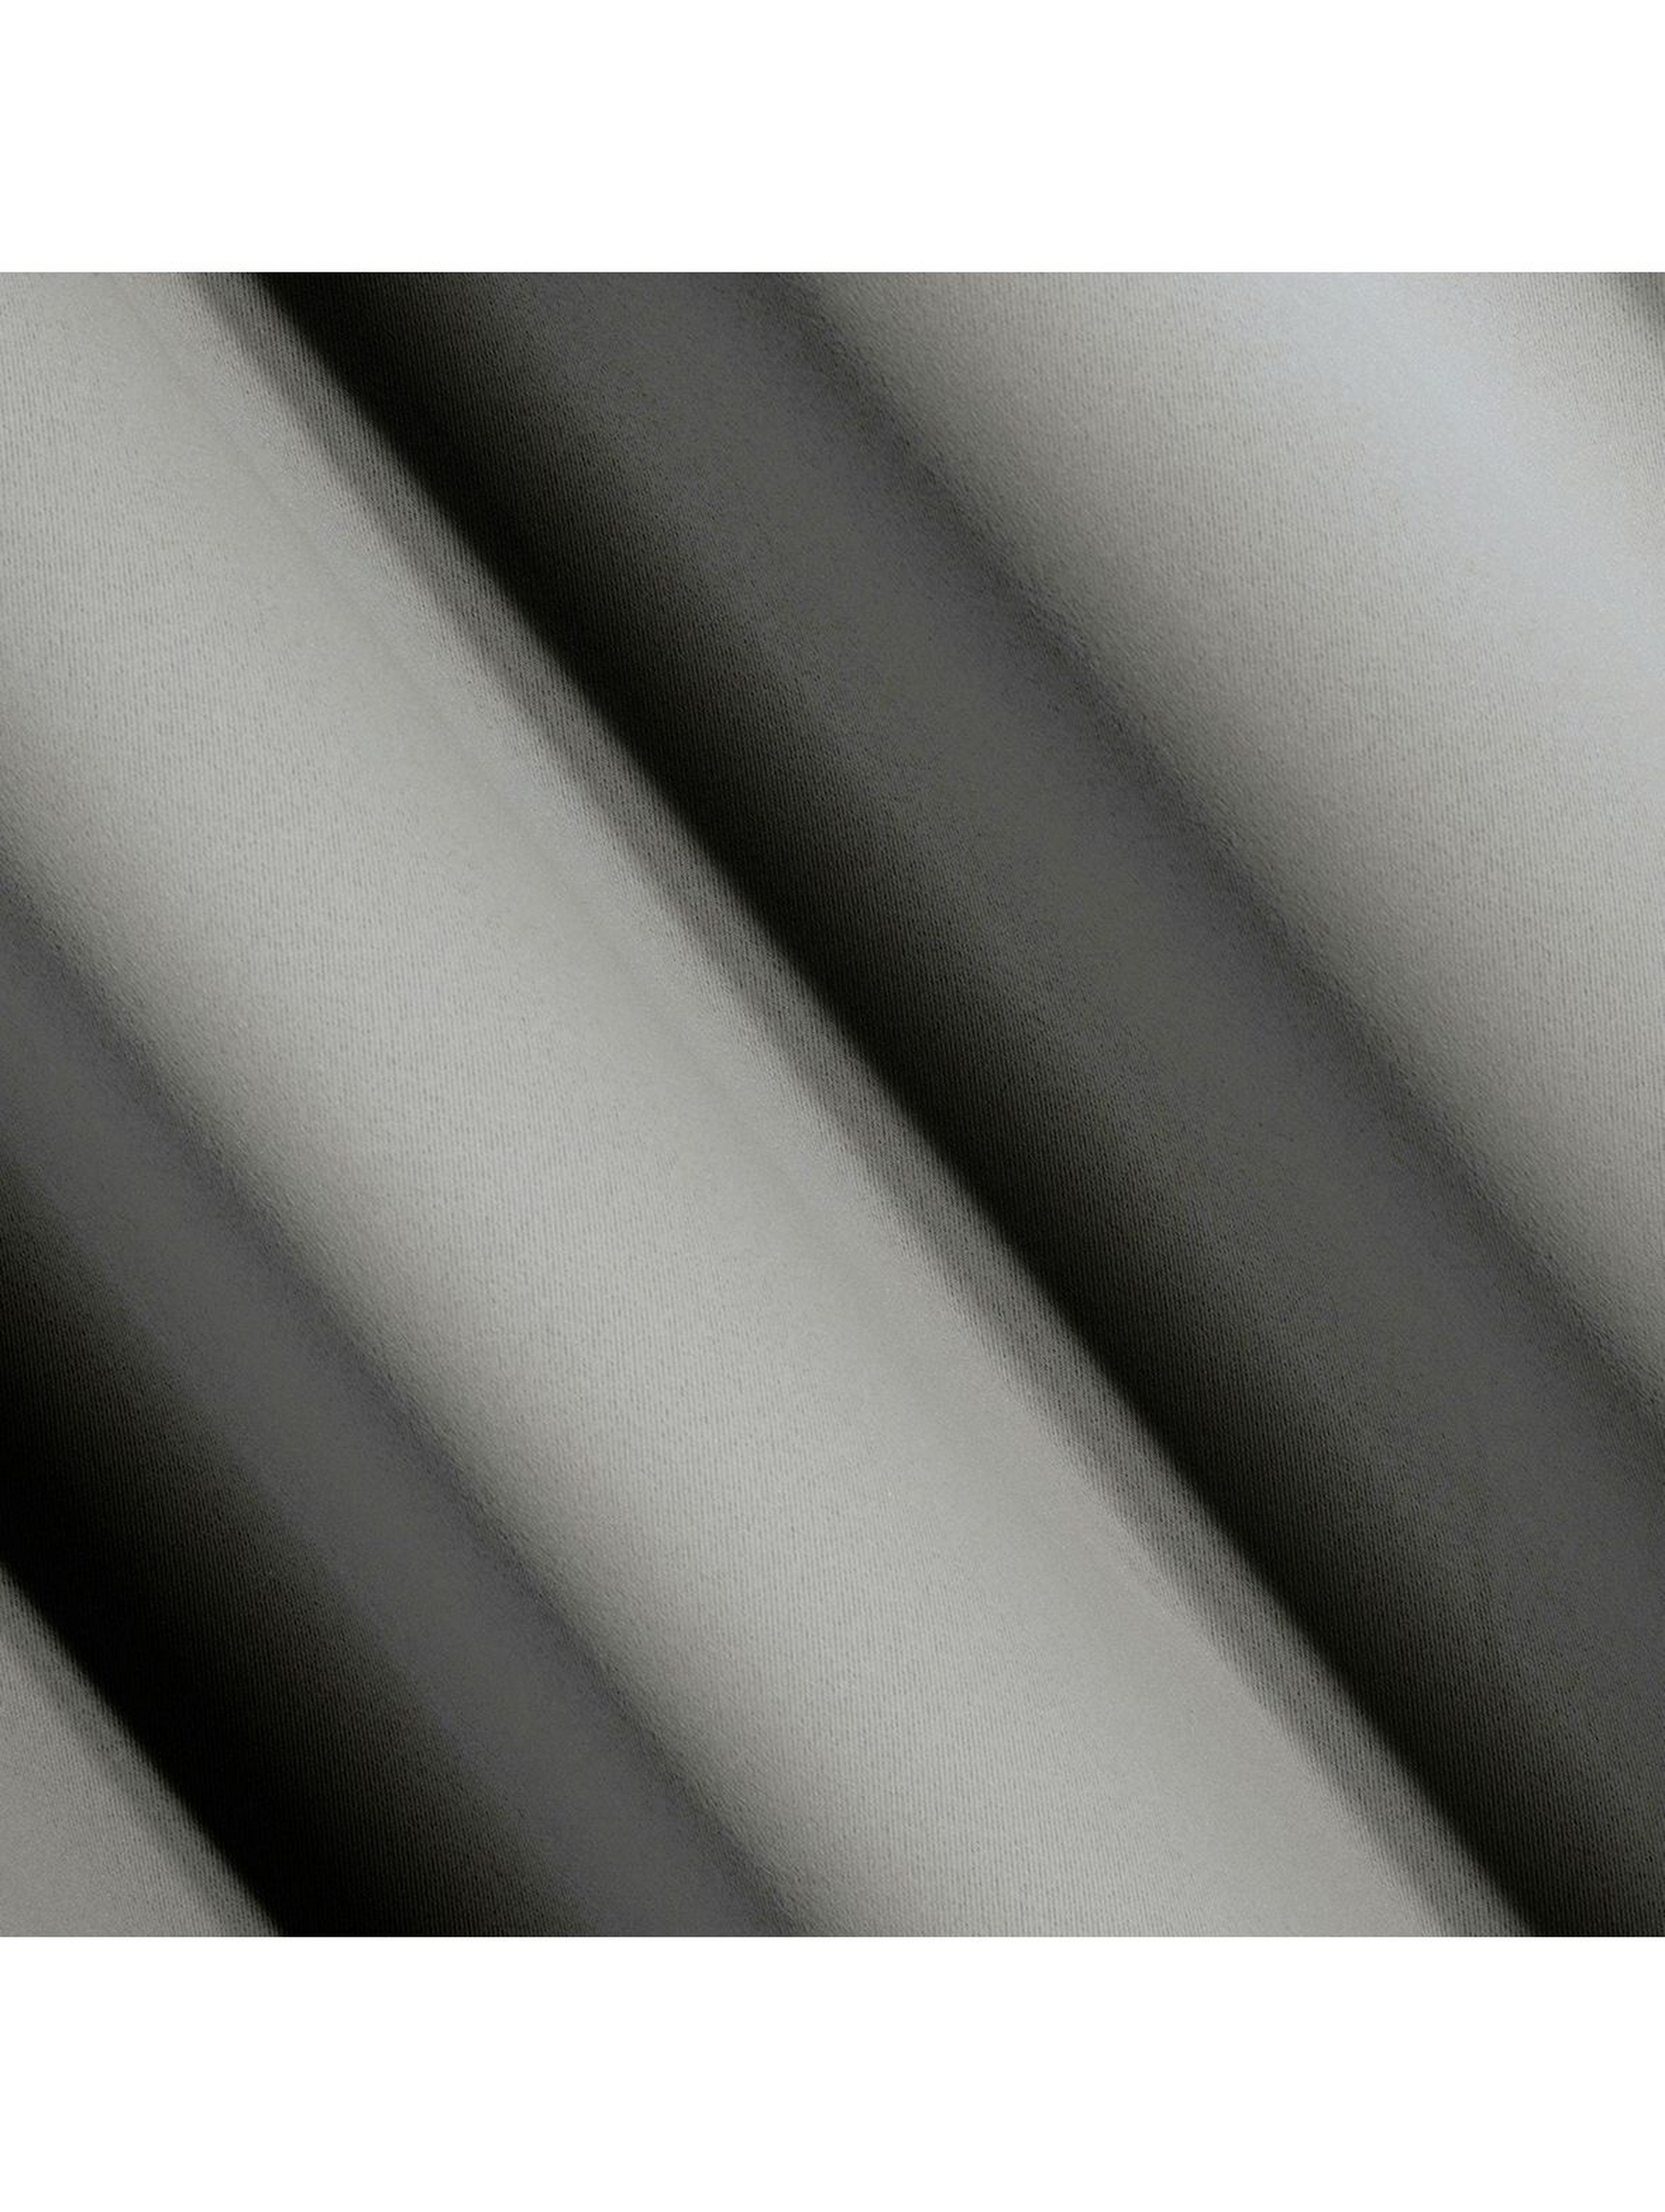 Zasłona jednokolorowa - szara - 135x250cm